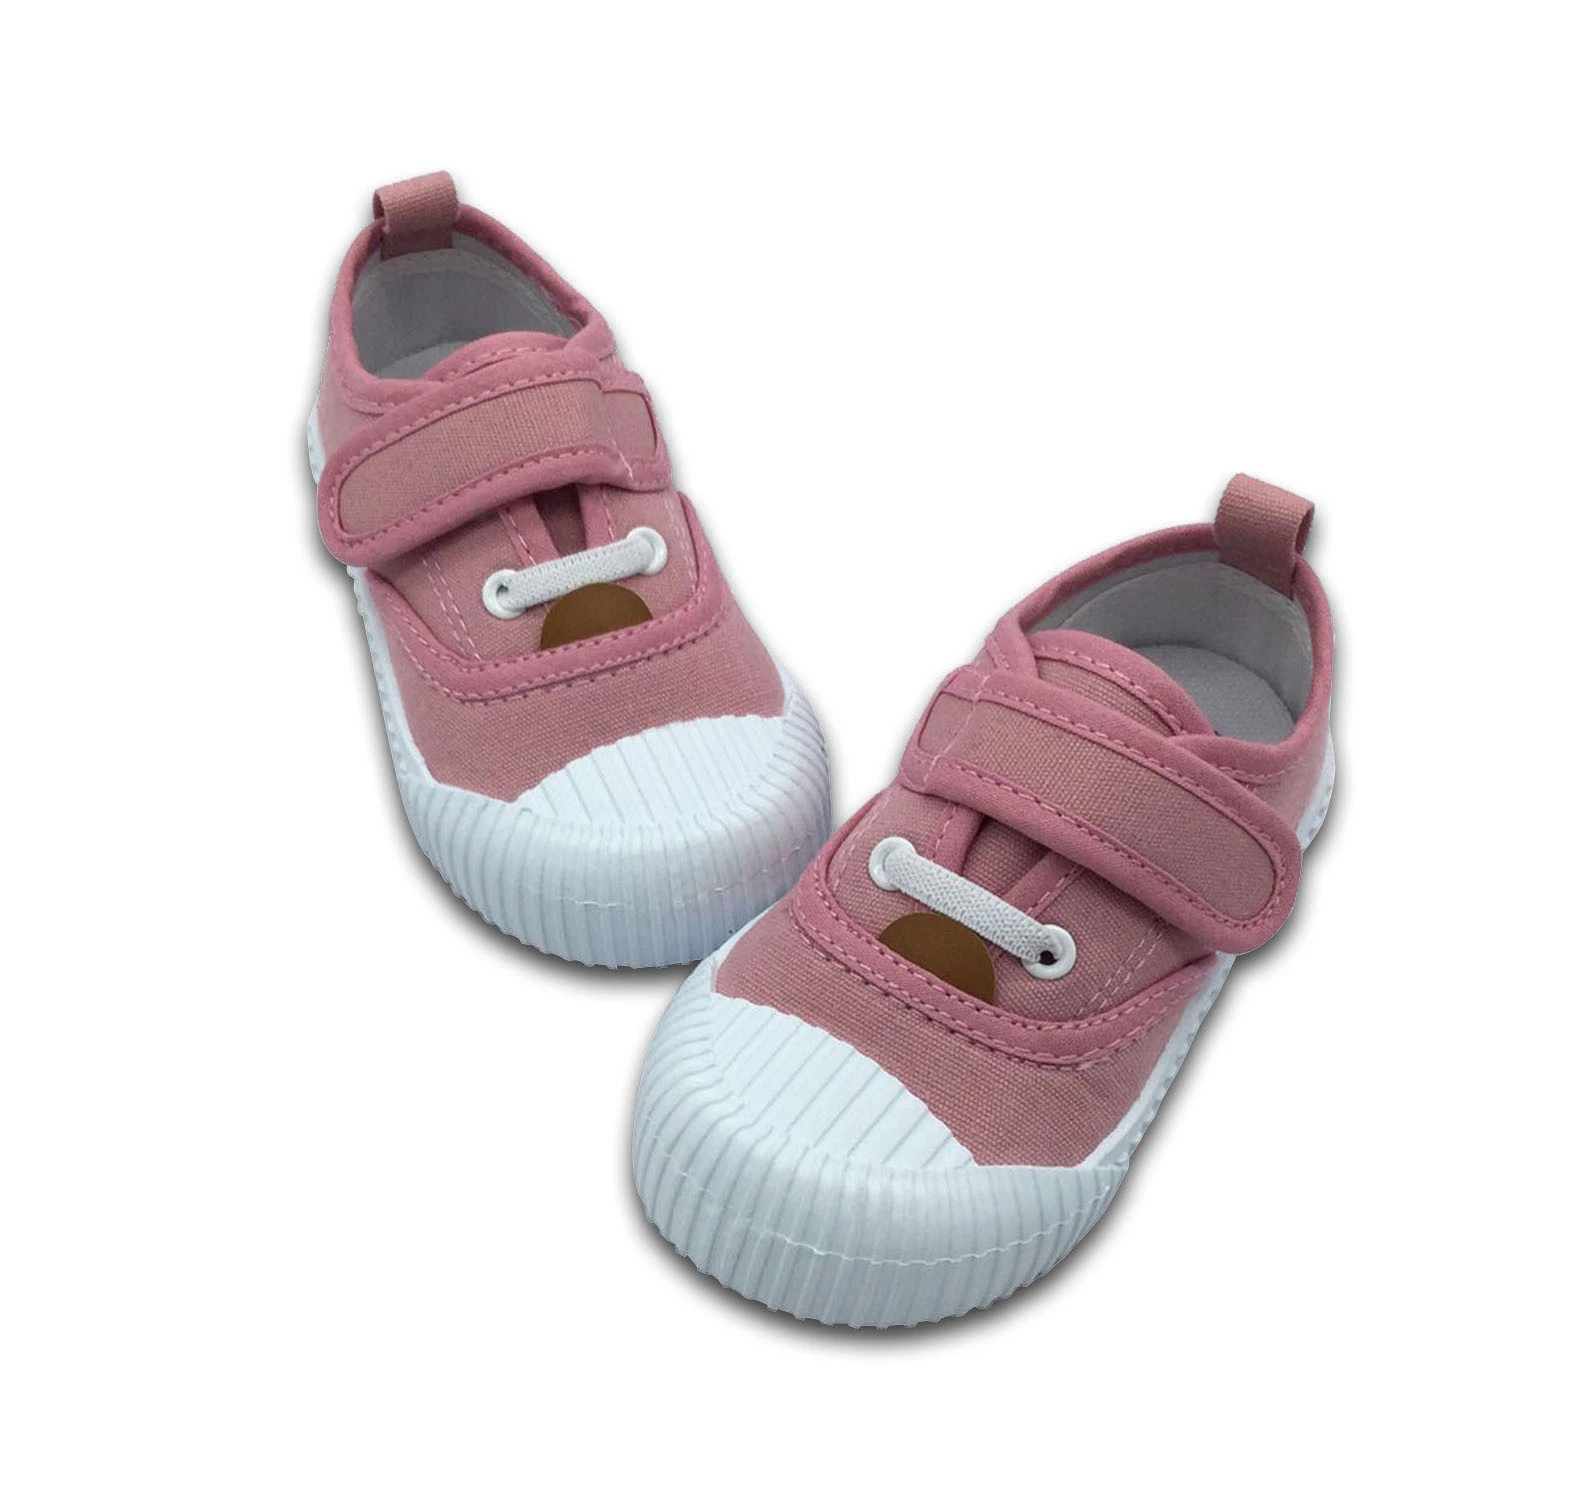 Nuevo Clásico bebé niña zapatos de lienzo bebé